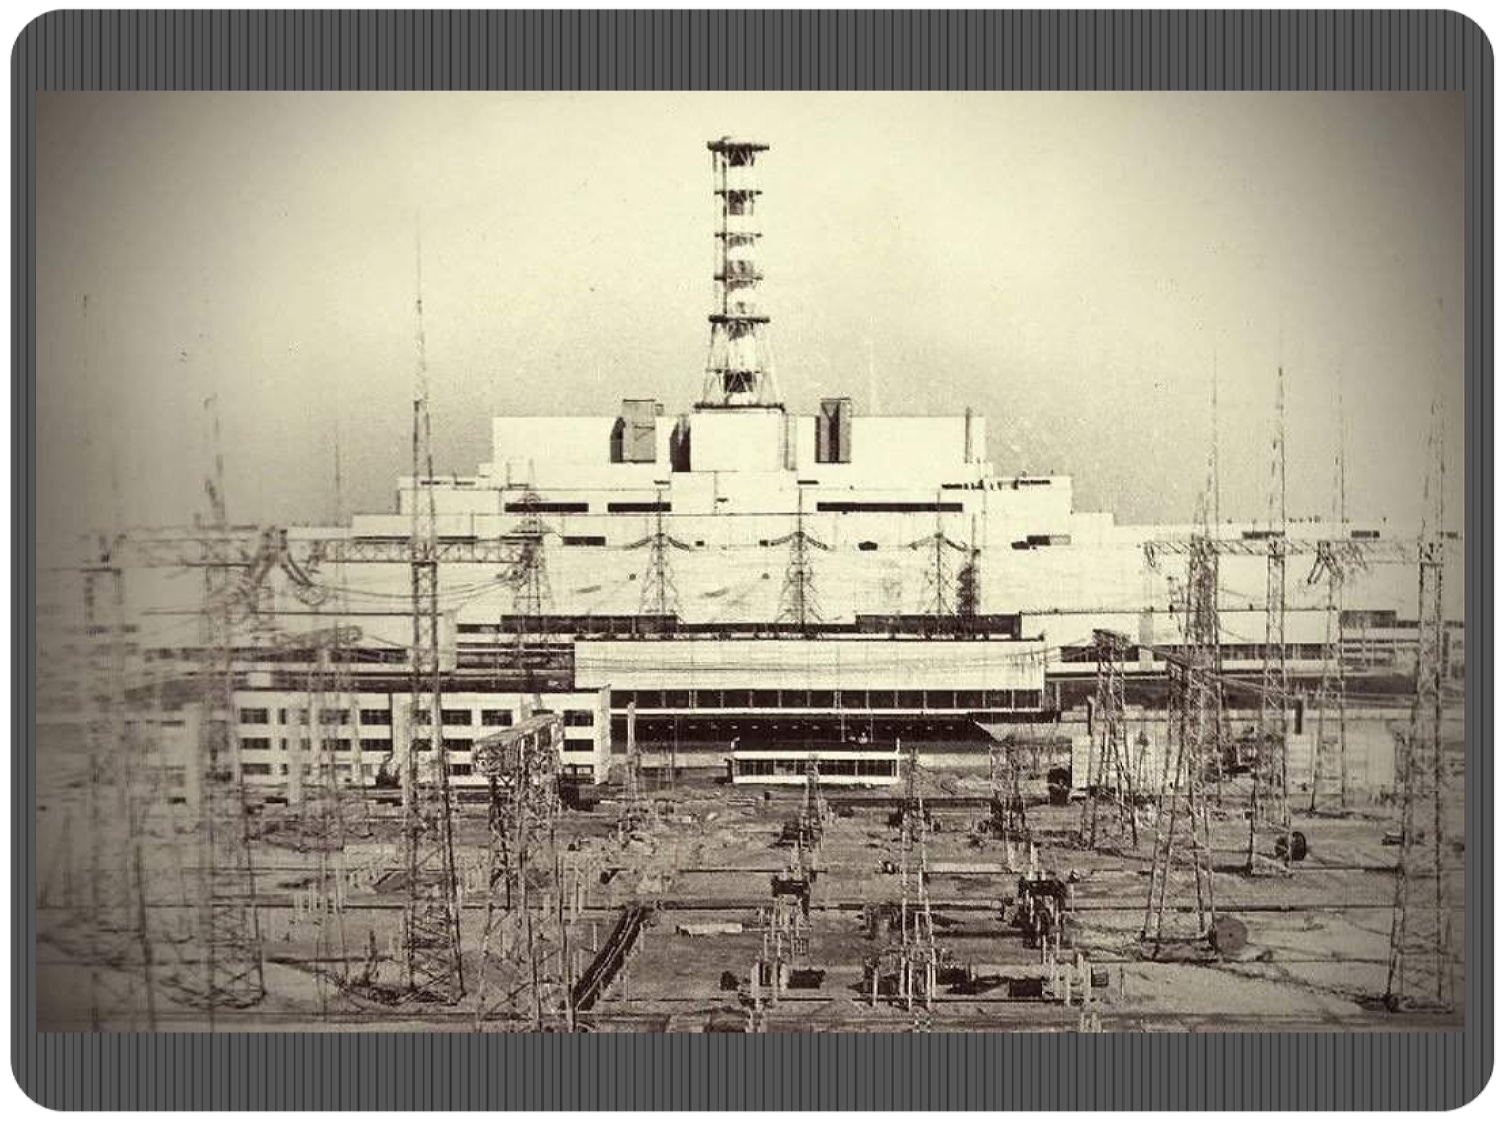 Чернобыльская аэс назначение. Атомная электростанция Чернобыль 4 энергоблок. Чернобыль до аварии ЧАЭС. Чернобыльская АЭС 1986 реактор. Припять до катастрофы на Чернобыльской АЭС.